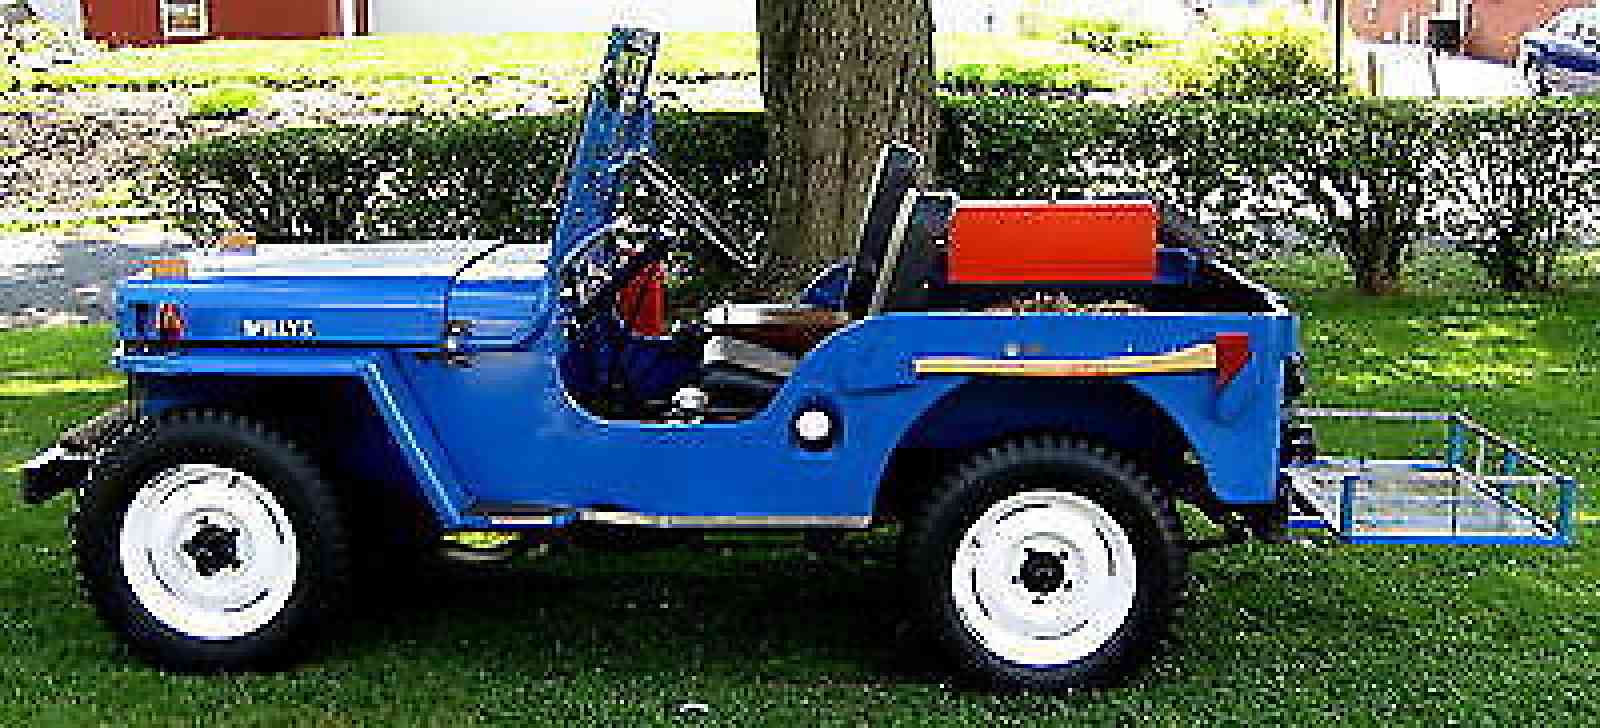 Willys CJ 2A (1946)